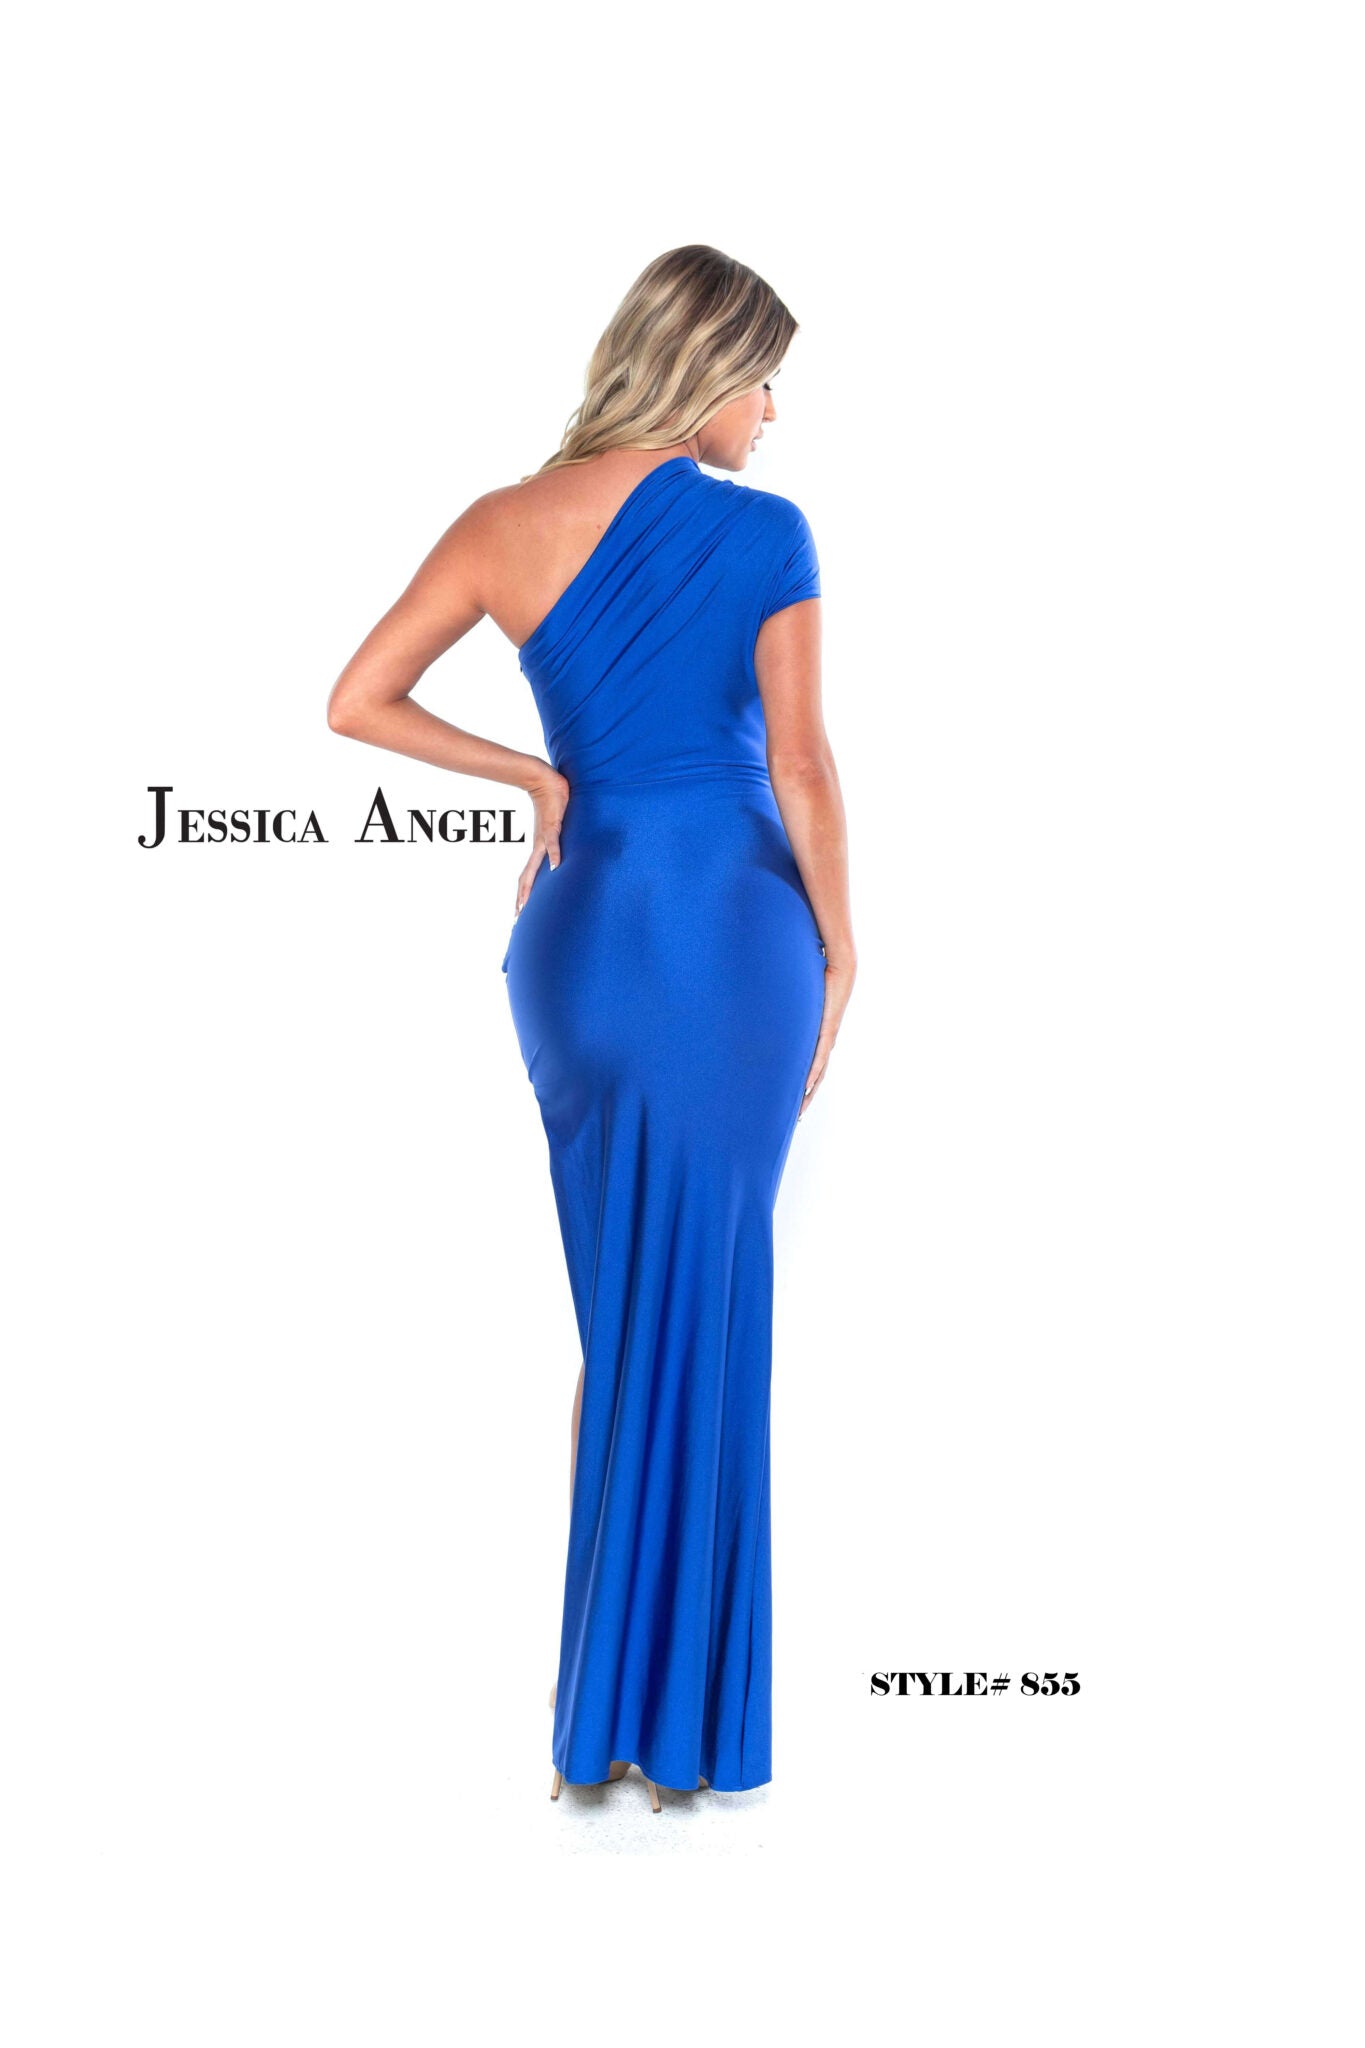 JESSICA ANGEL #855